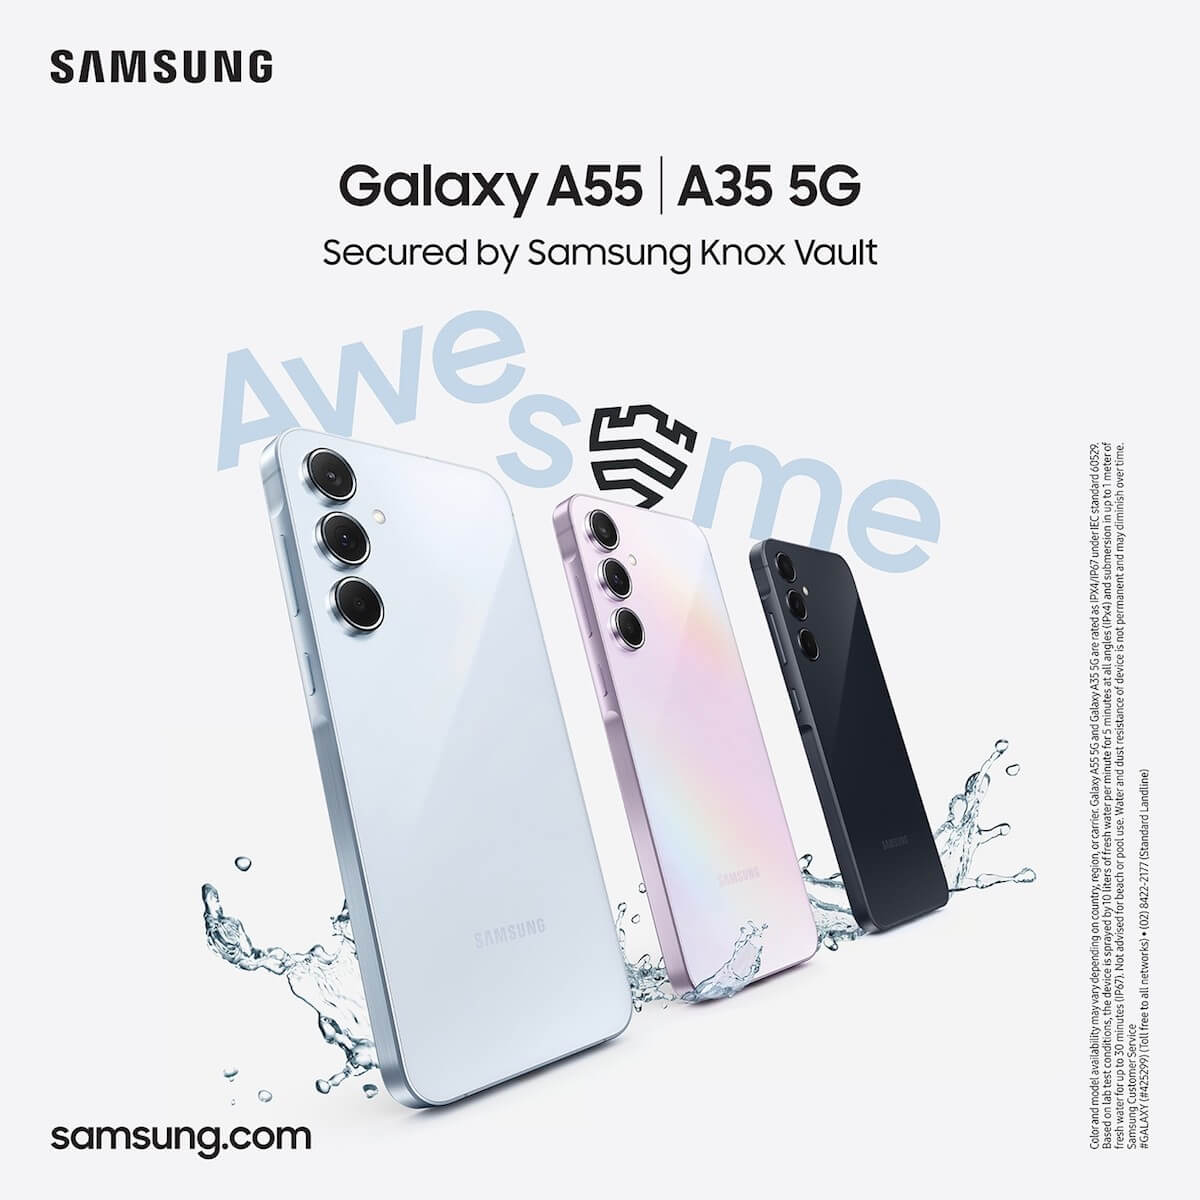 Samsung Galaxy A Series: A35 and A55